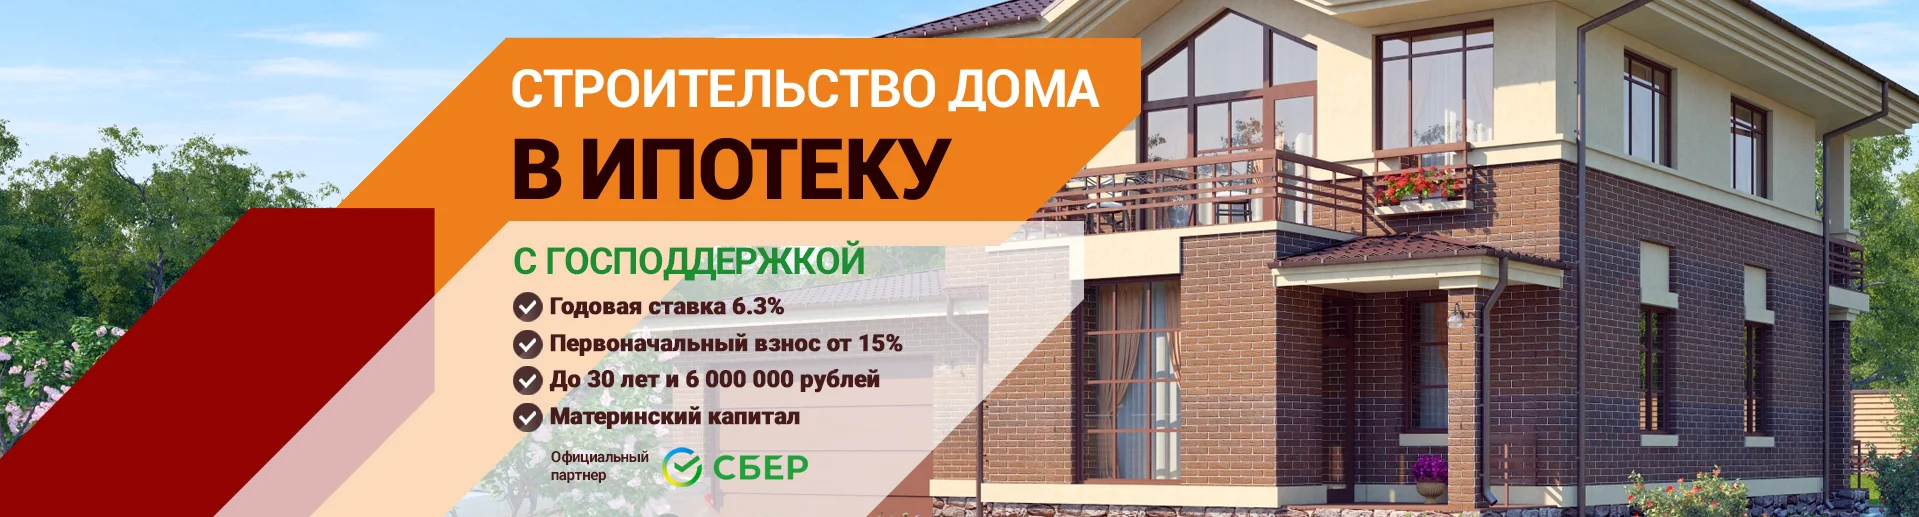 Ипотека на строительство дома в Тольятти